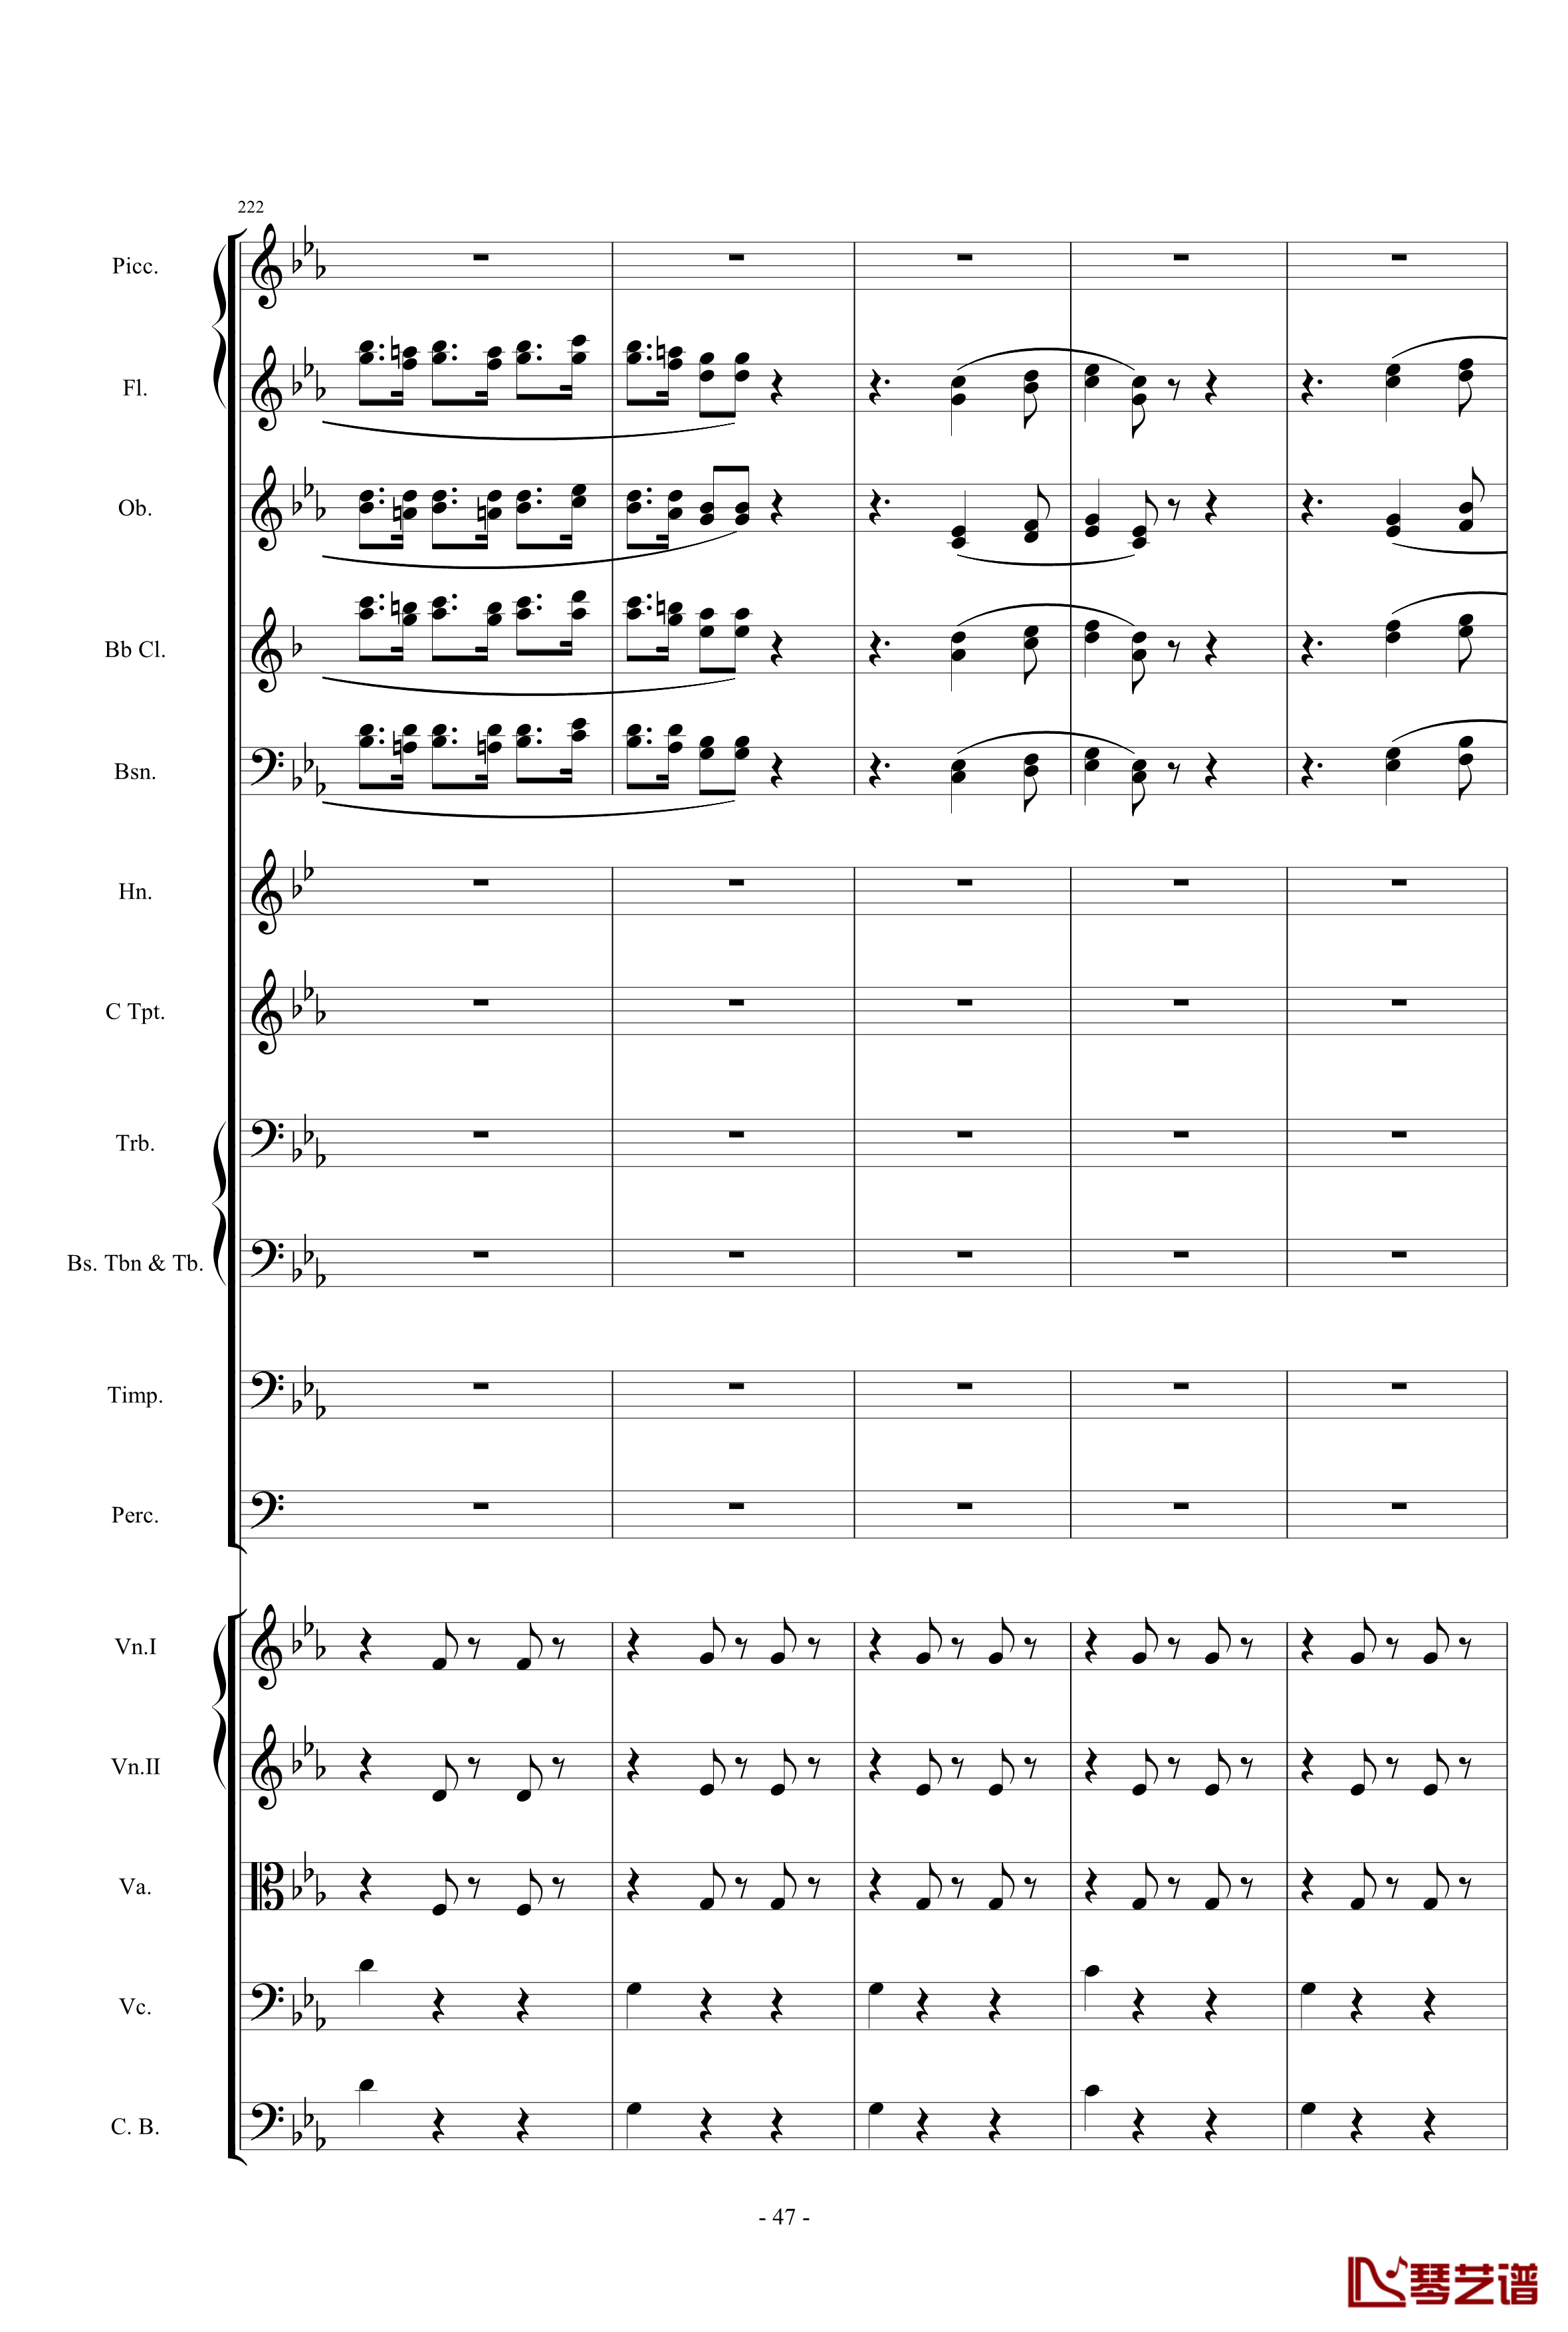 愤怒的小鸟交响曲第三乐章Op.5 no.3钢琴谱-1057257847